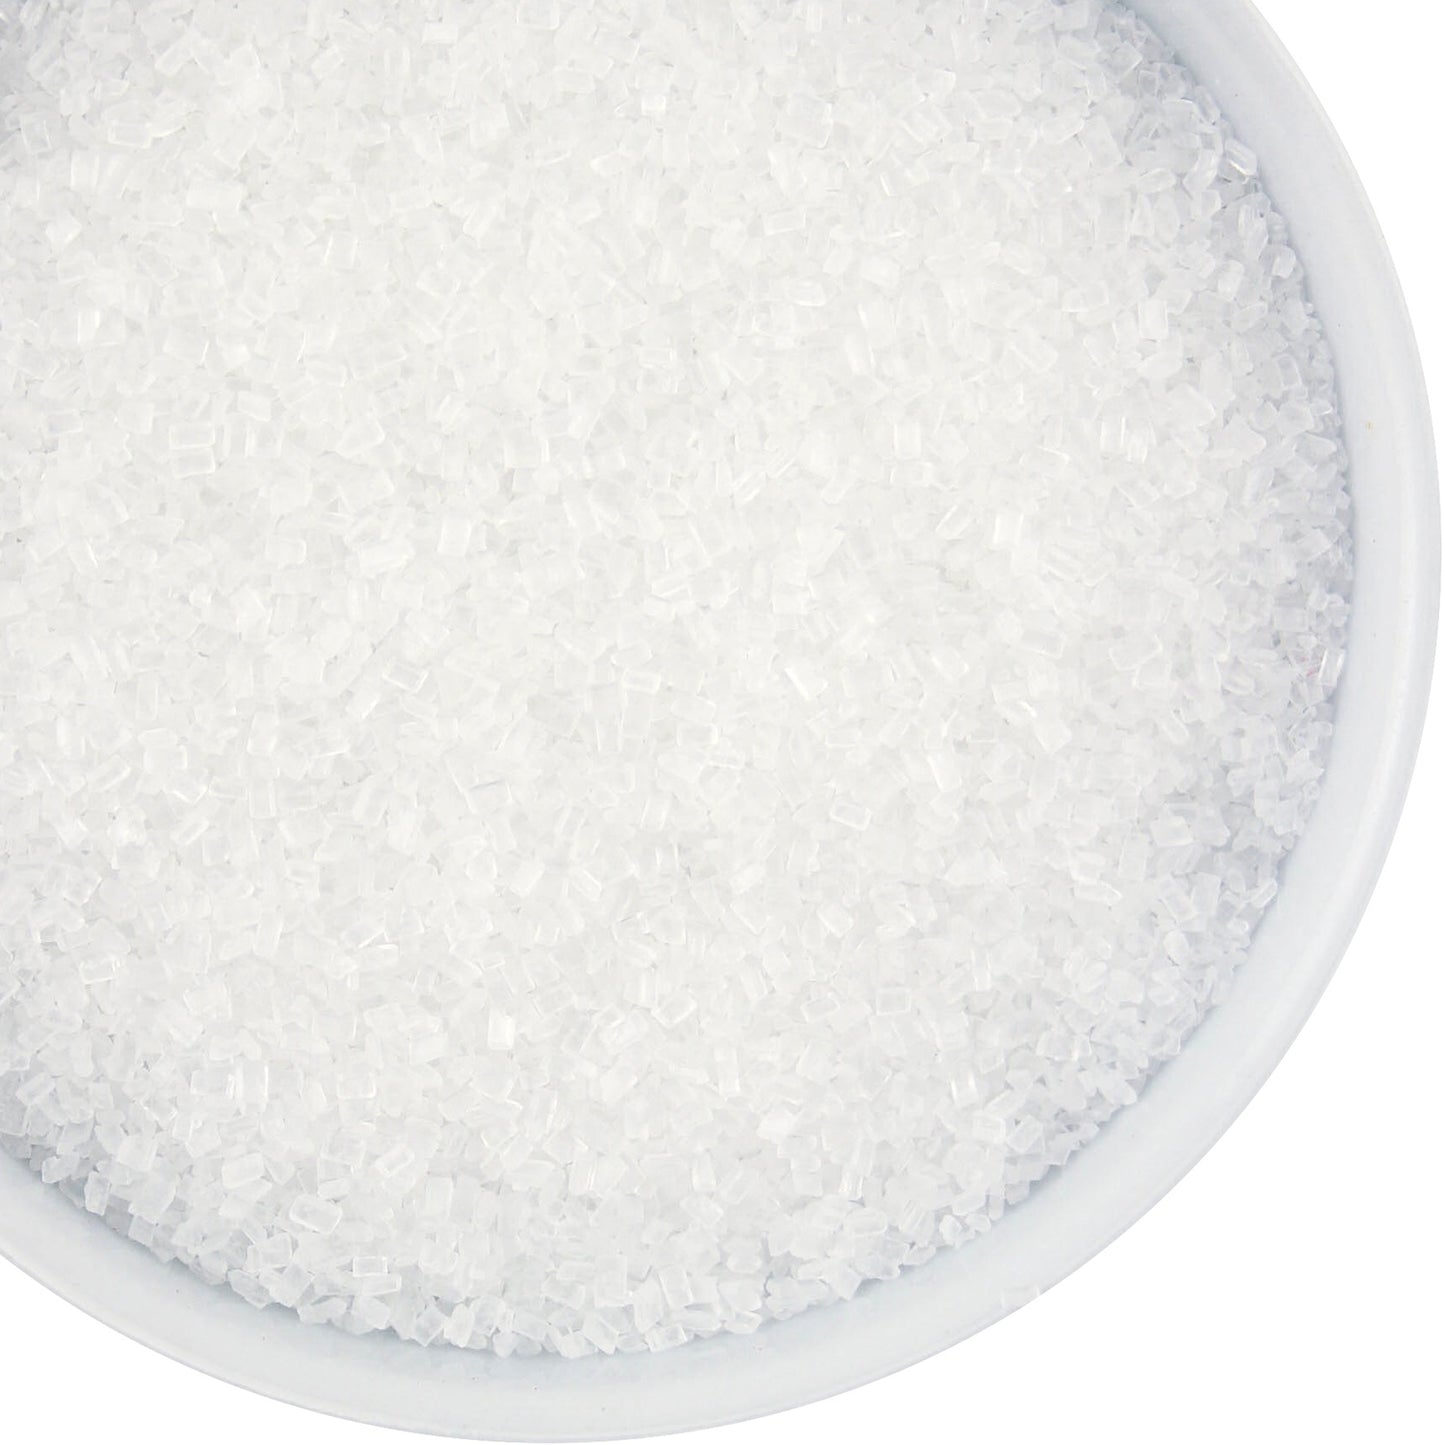 White Coarse Sugar - 4oz